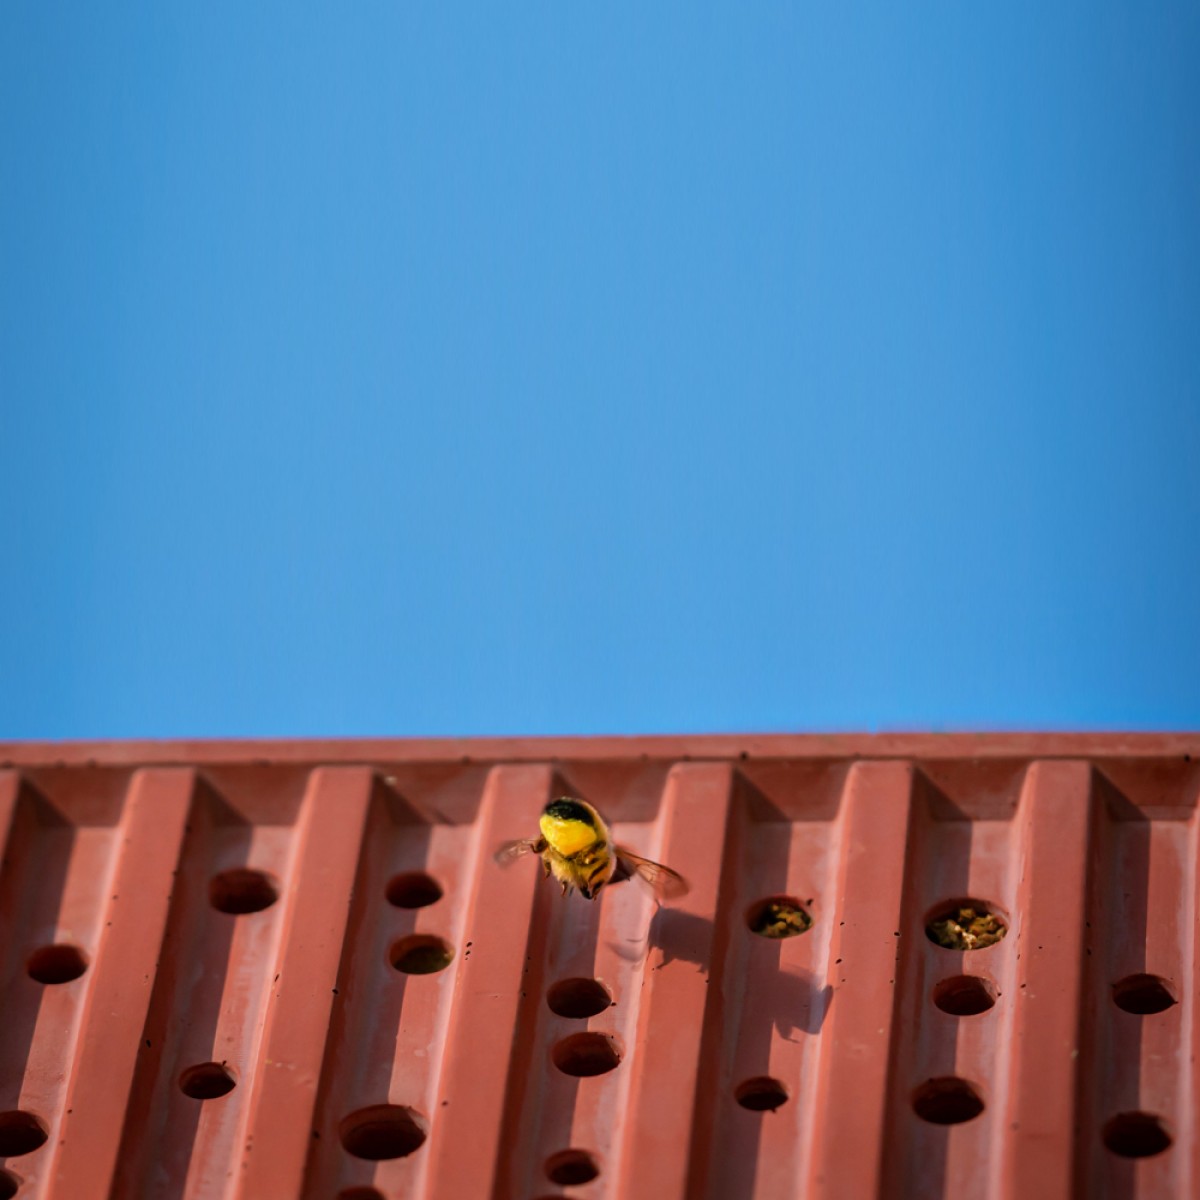 Bienenhotel aus Beton - beecontainer "Rot" im Überseecontainer-Design